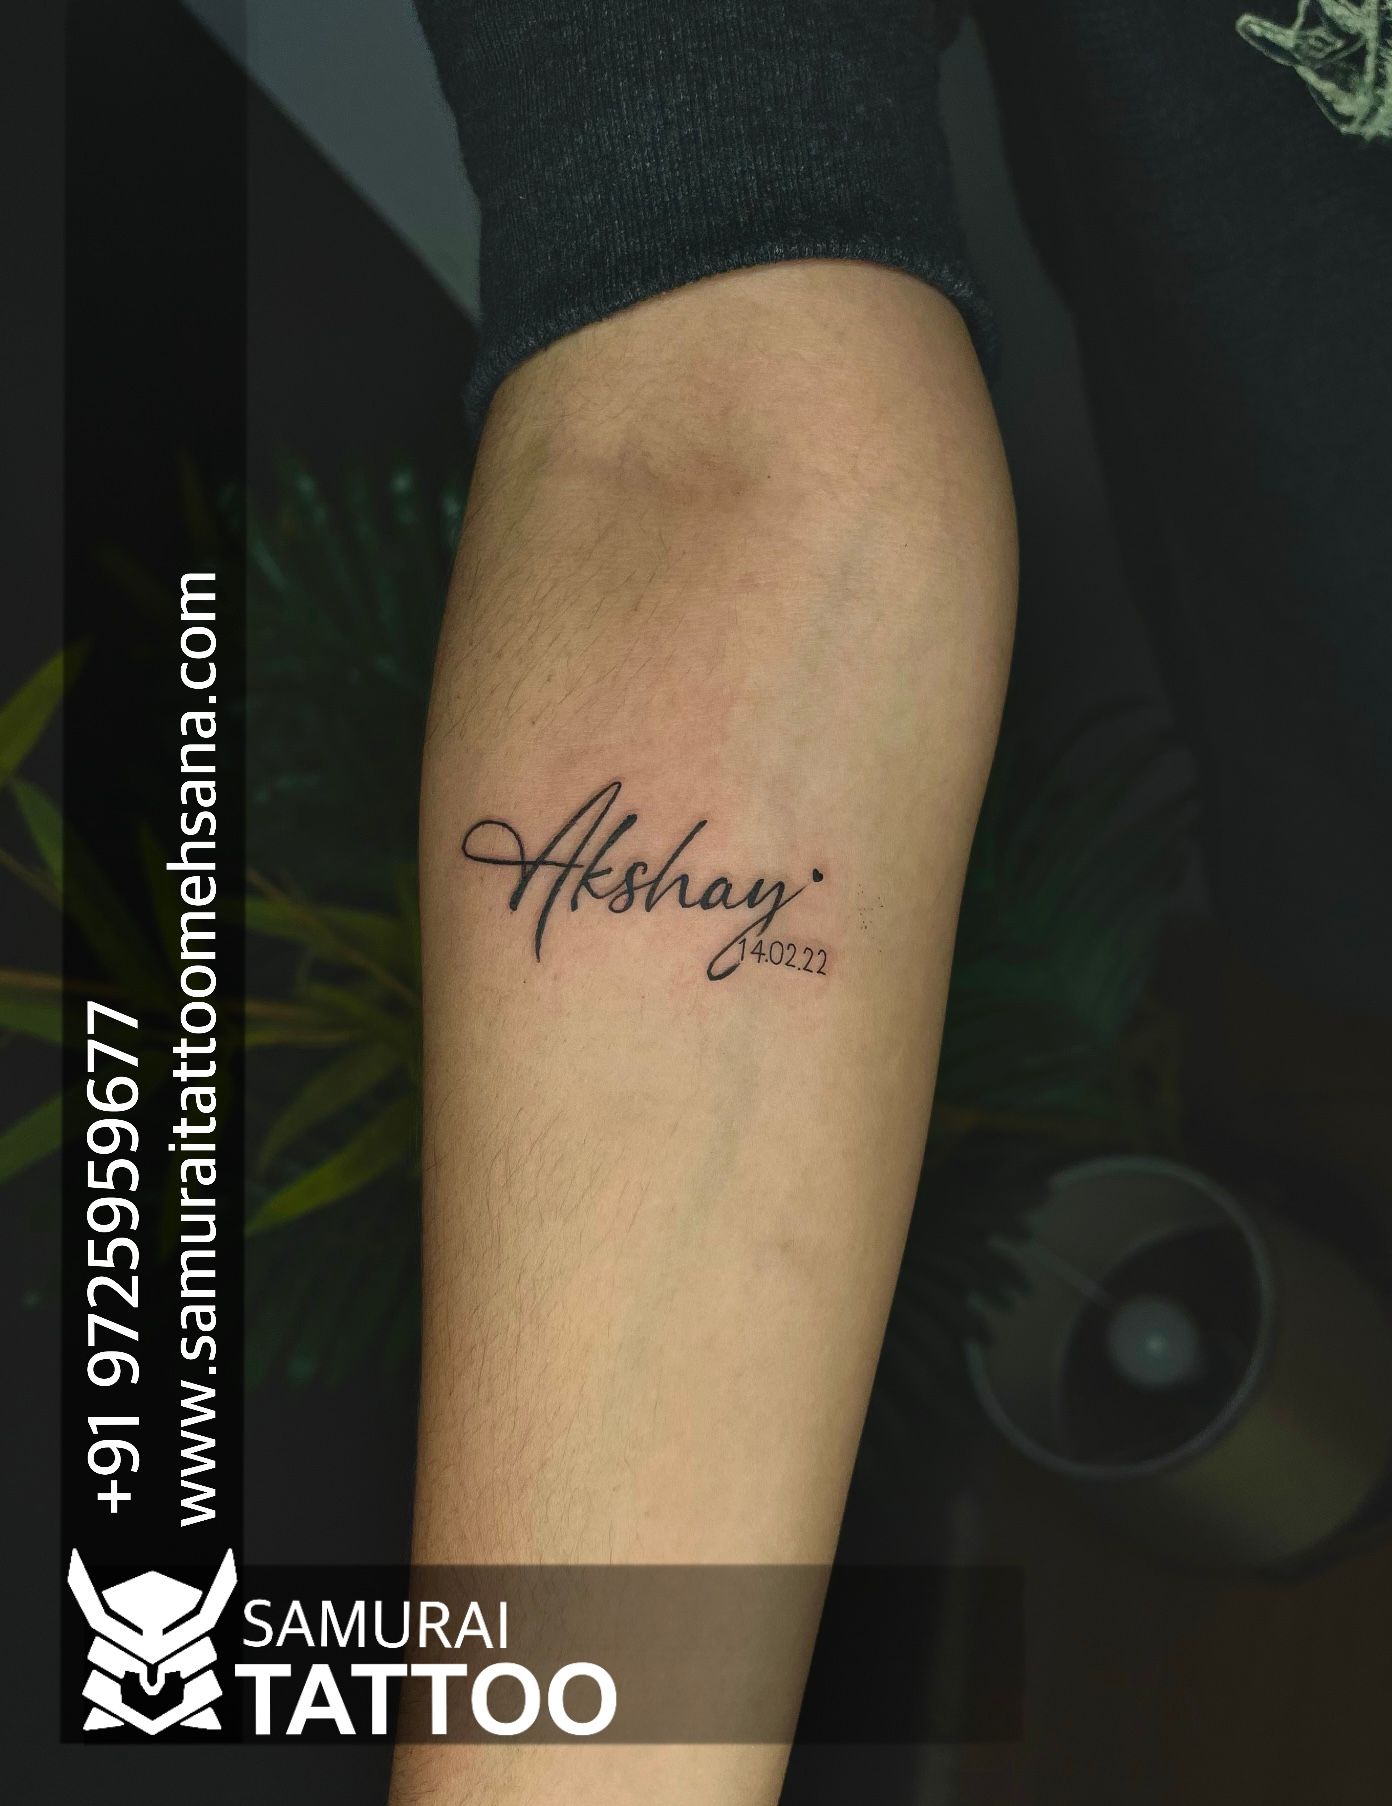 Akshay tattoo shop Alephata. | By akshaygholap925Facebook